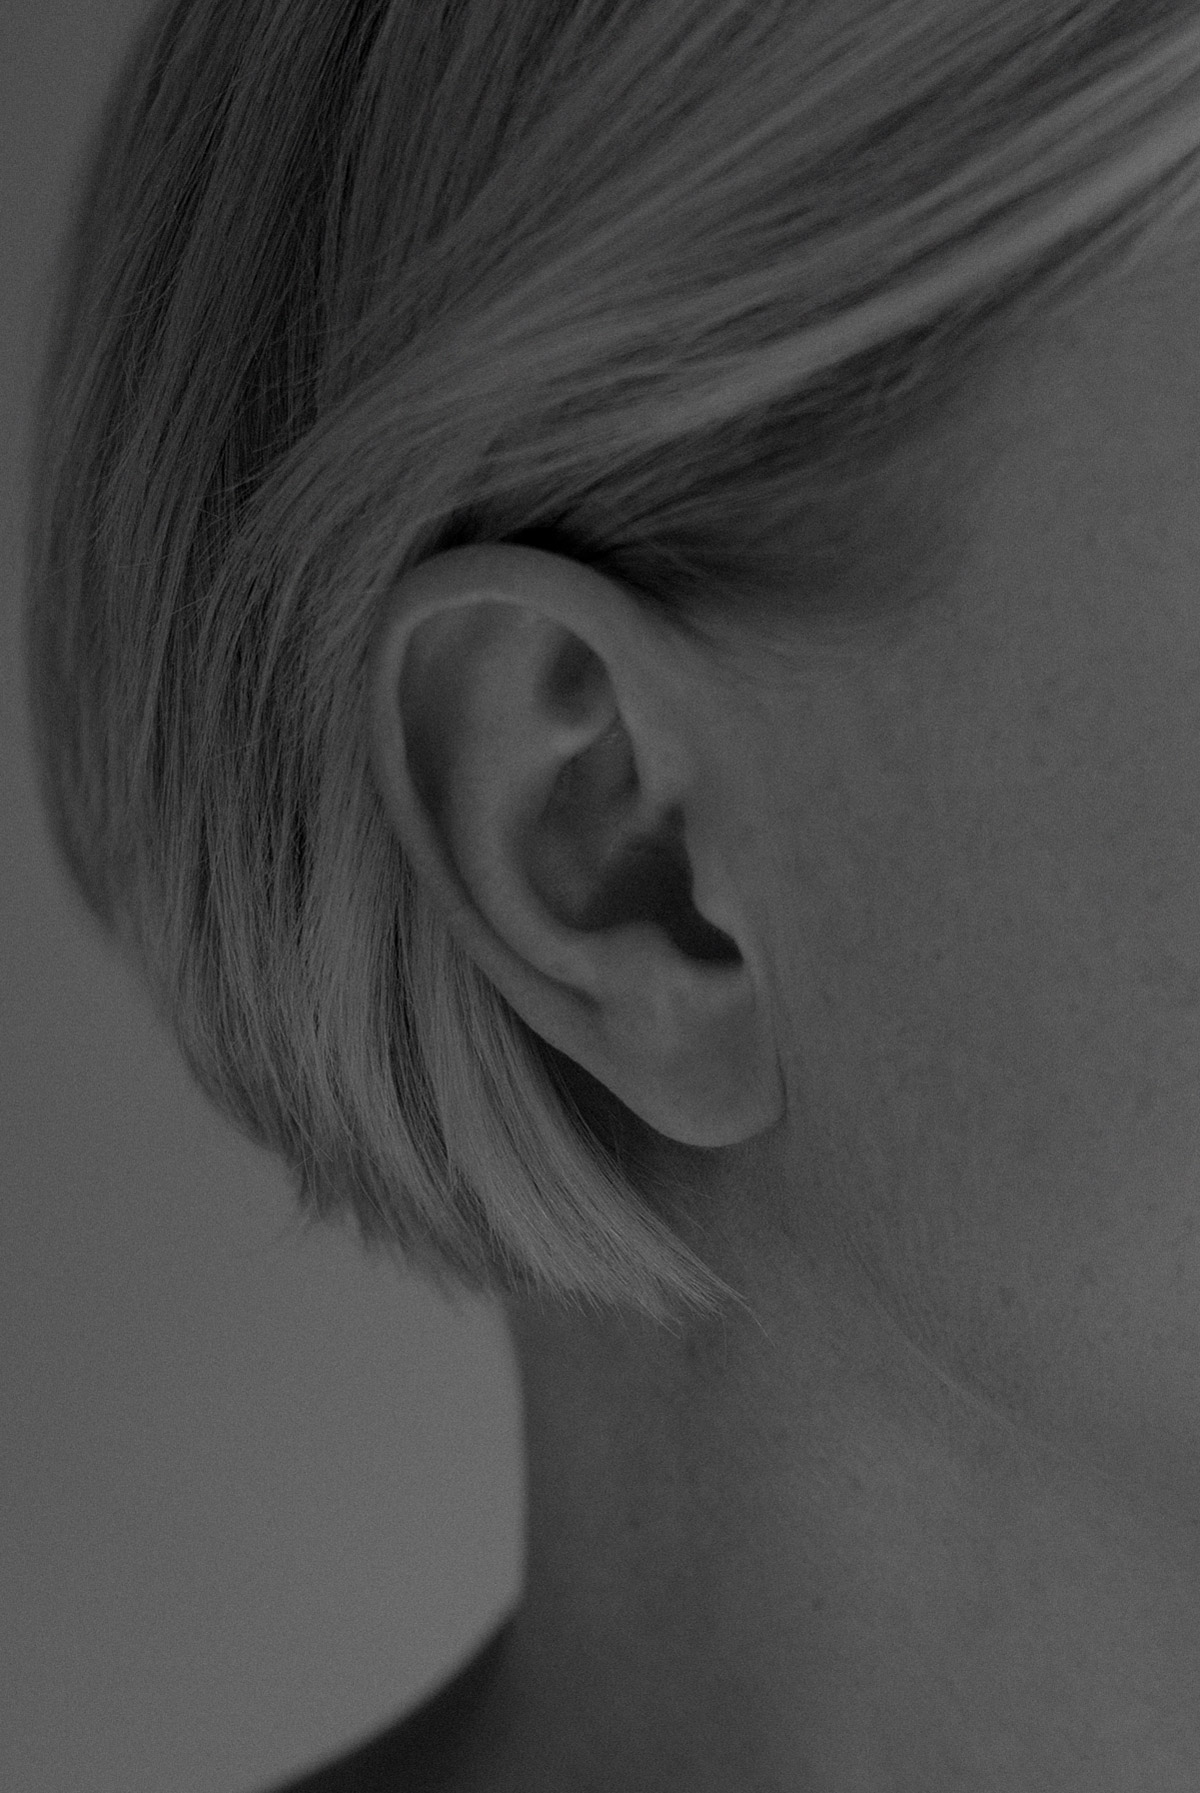 Schwarz-weiß Foto des rechten Ohrs einer schönen, jungen Frau mit Kurzhaarfrisur - auf der Seite "Leistungsspektrum" von www.hanseatic-facelift.de unter der Rubrik "Ohrkorrekturen" (Otoplastik) - "Den Ohren ergeht es wie der Nase. Sie erregen nur dann Aufmerksamkeit, wenn sie von der Norm abweichen – also abstehen, sehr groß sind, usw. Die Otoplastik korrigiert die abstehenden Ohren oder Tassenohren und jede Art von Missbildung oder Unfallfolgen. Eine Otoplastik ist eine Operation der Ohren. Sie korrigiert deren Ästhetik – etwa im Falle abstehender Ohren oder Tassenohren sowie jede Art von Missbildung oder Unfallfolgen. Durch den Eingriff lassen sich mentale Barrieren durch ästhetische Korrekturen abbauen. Die Otoplastik ist bereits bei kleineren Kindern durchführbar sowie bei Männern und Frauen aller Altersgruppen möglich".